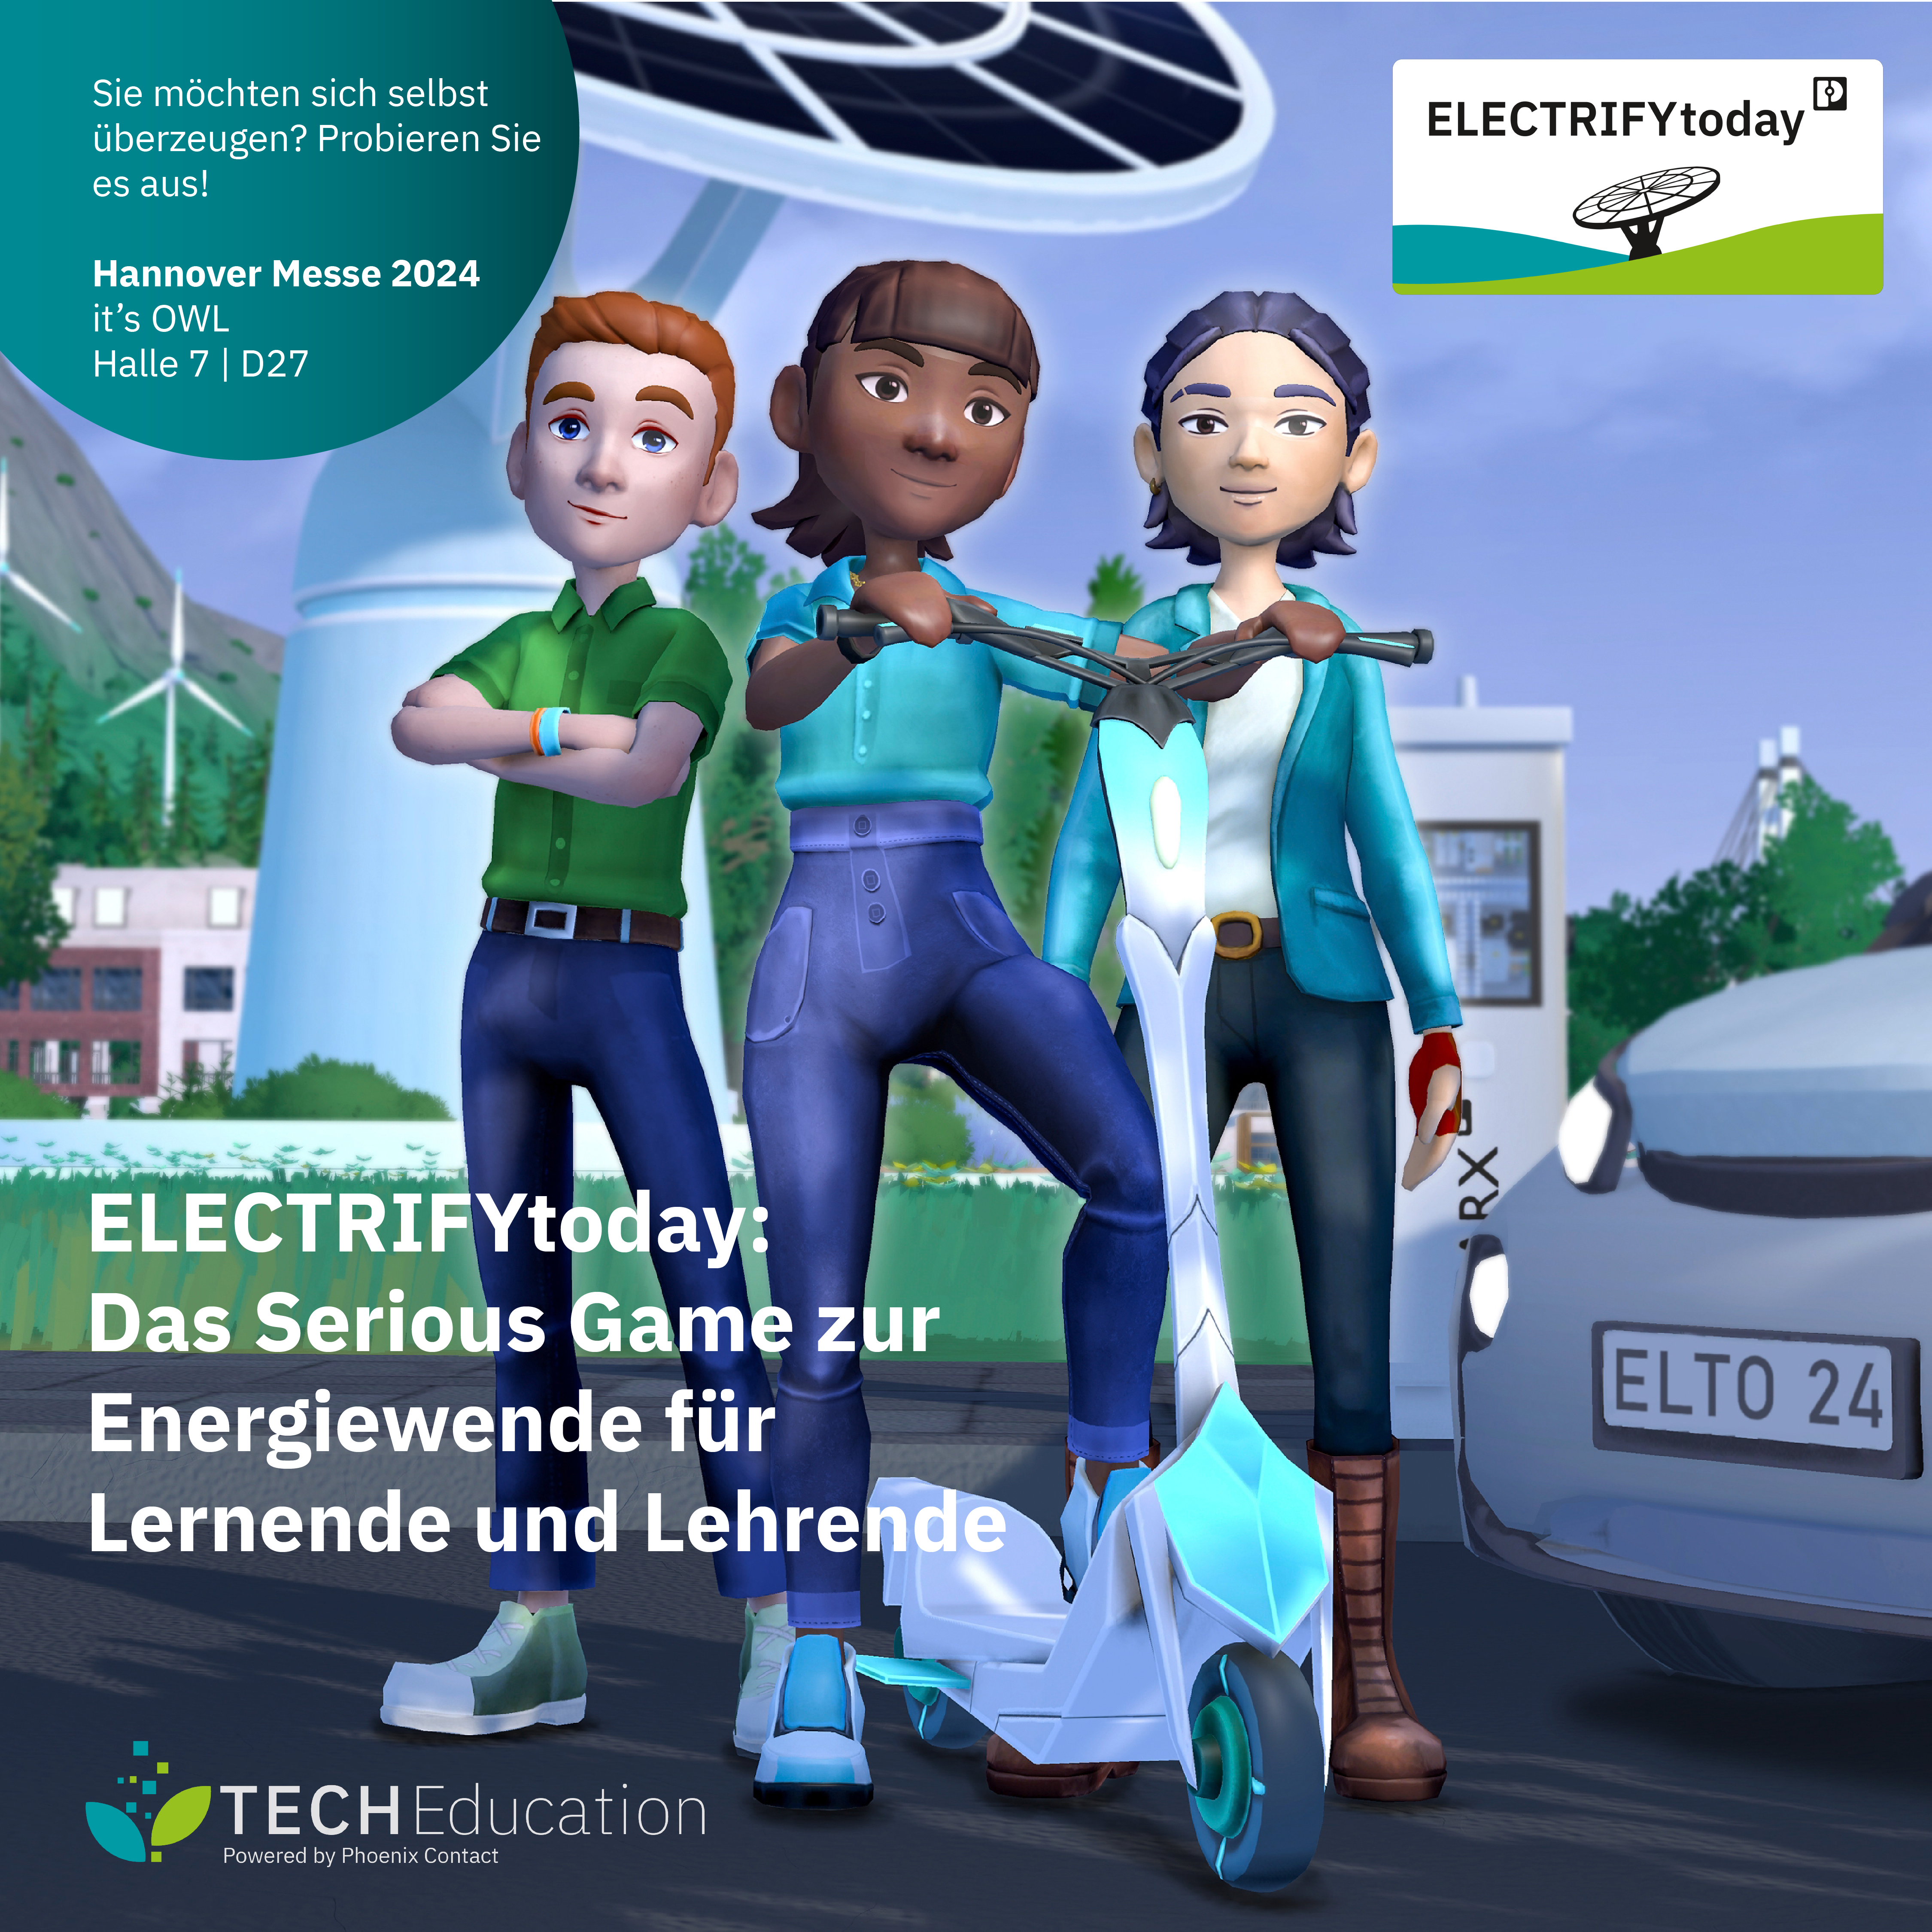 ELECTRIFYtoday: Testen Sie erstmalig das Online-Spiel zur Energiewende auf der Hannover Messe 2024